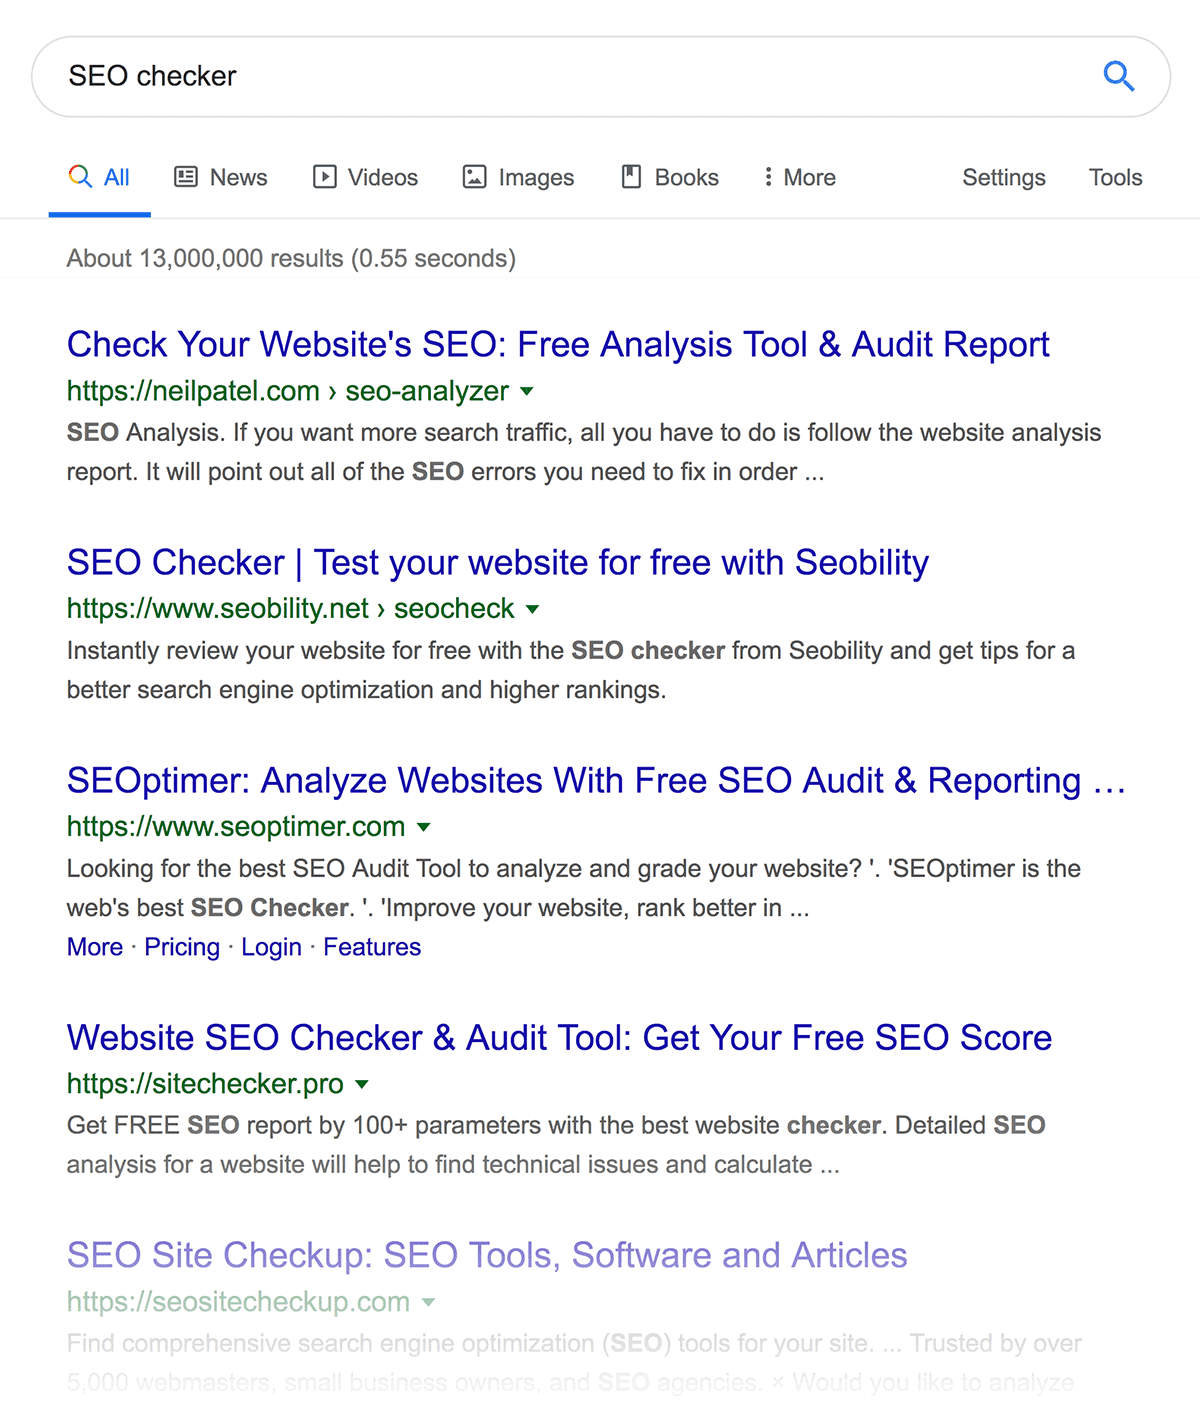 "SEO checker" search results